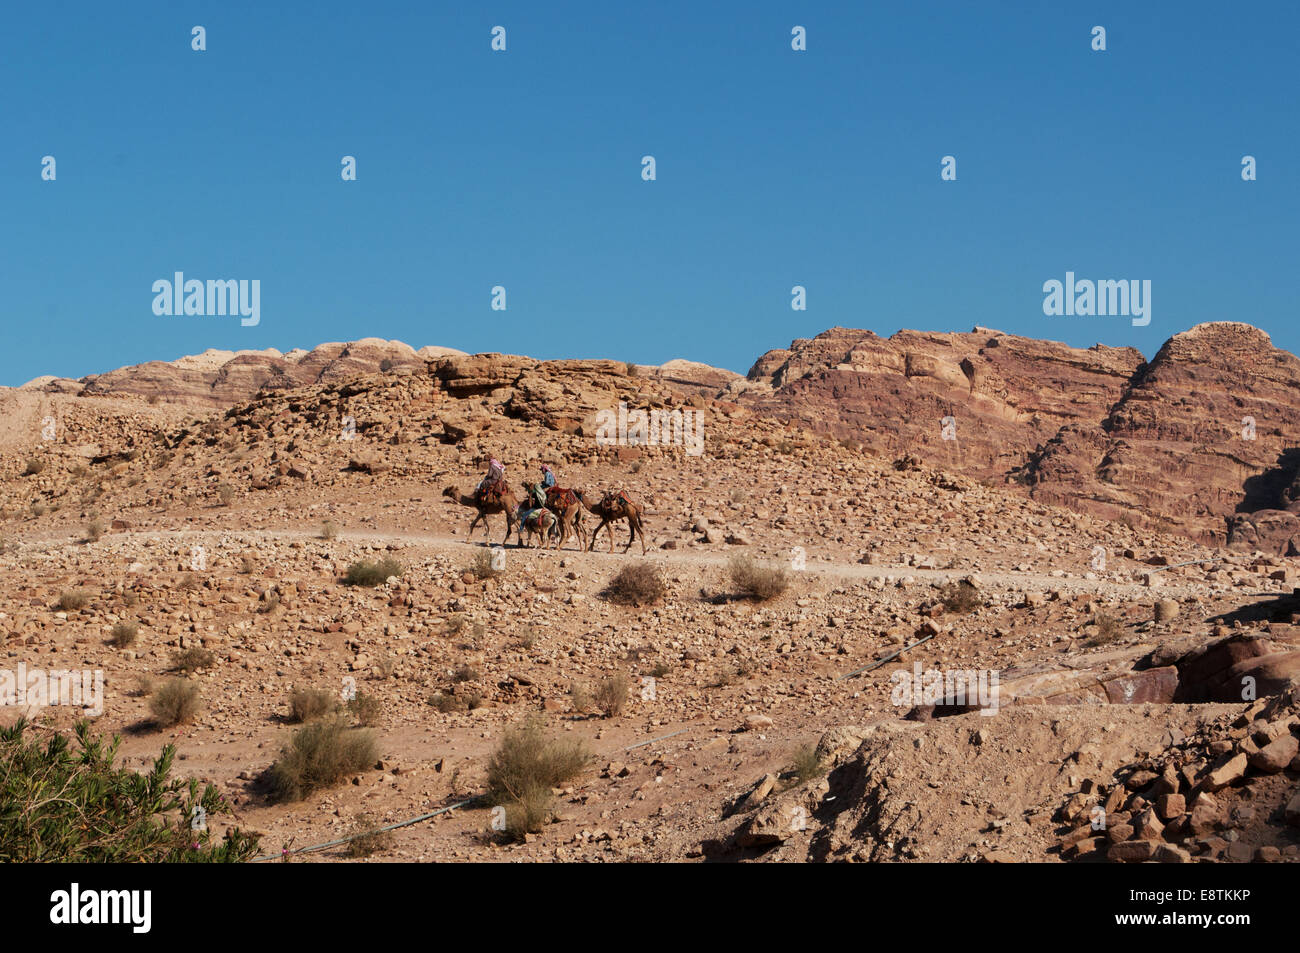 La Jordanie, Moyen-Orient : les bédouins et les chameaux dans le désert de la ville nabatéenne archéologique de Pétra, célèbre pour son architecture rock-cut Banque D'Images